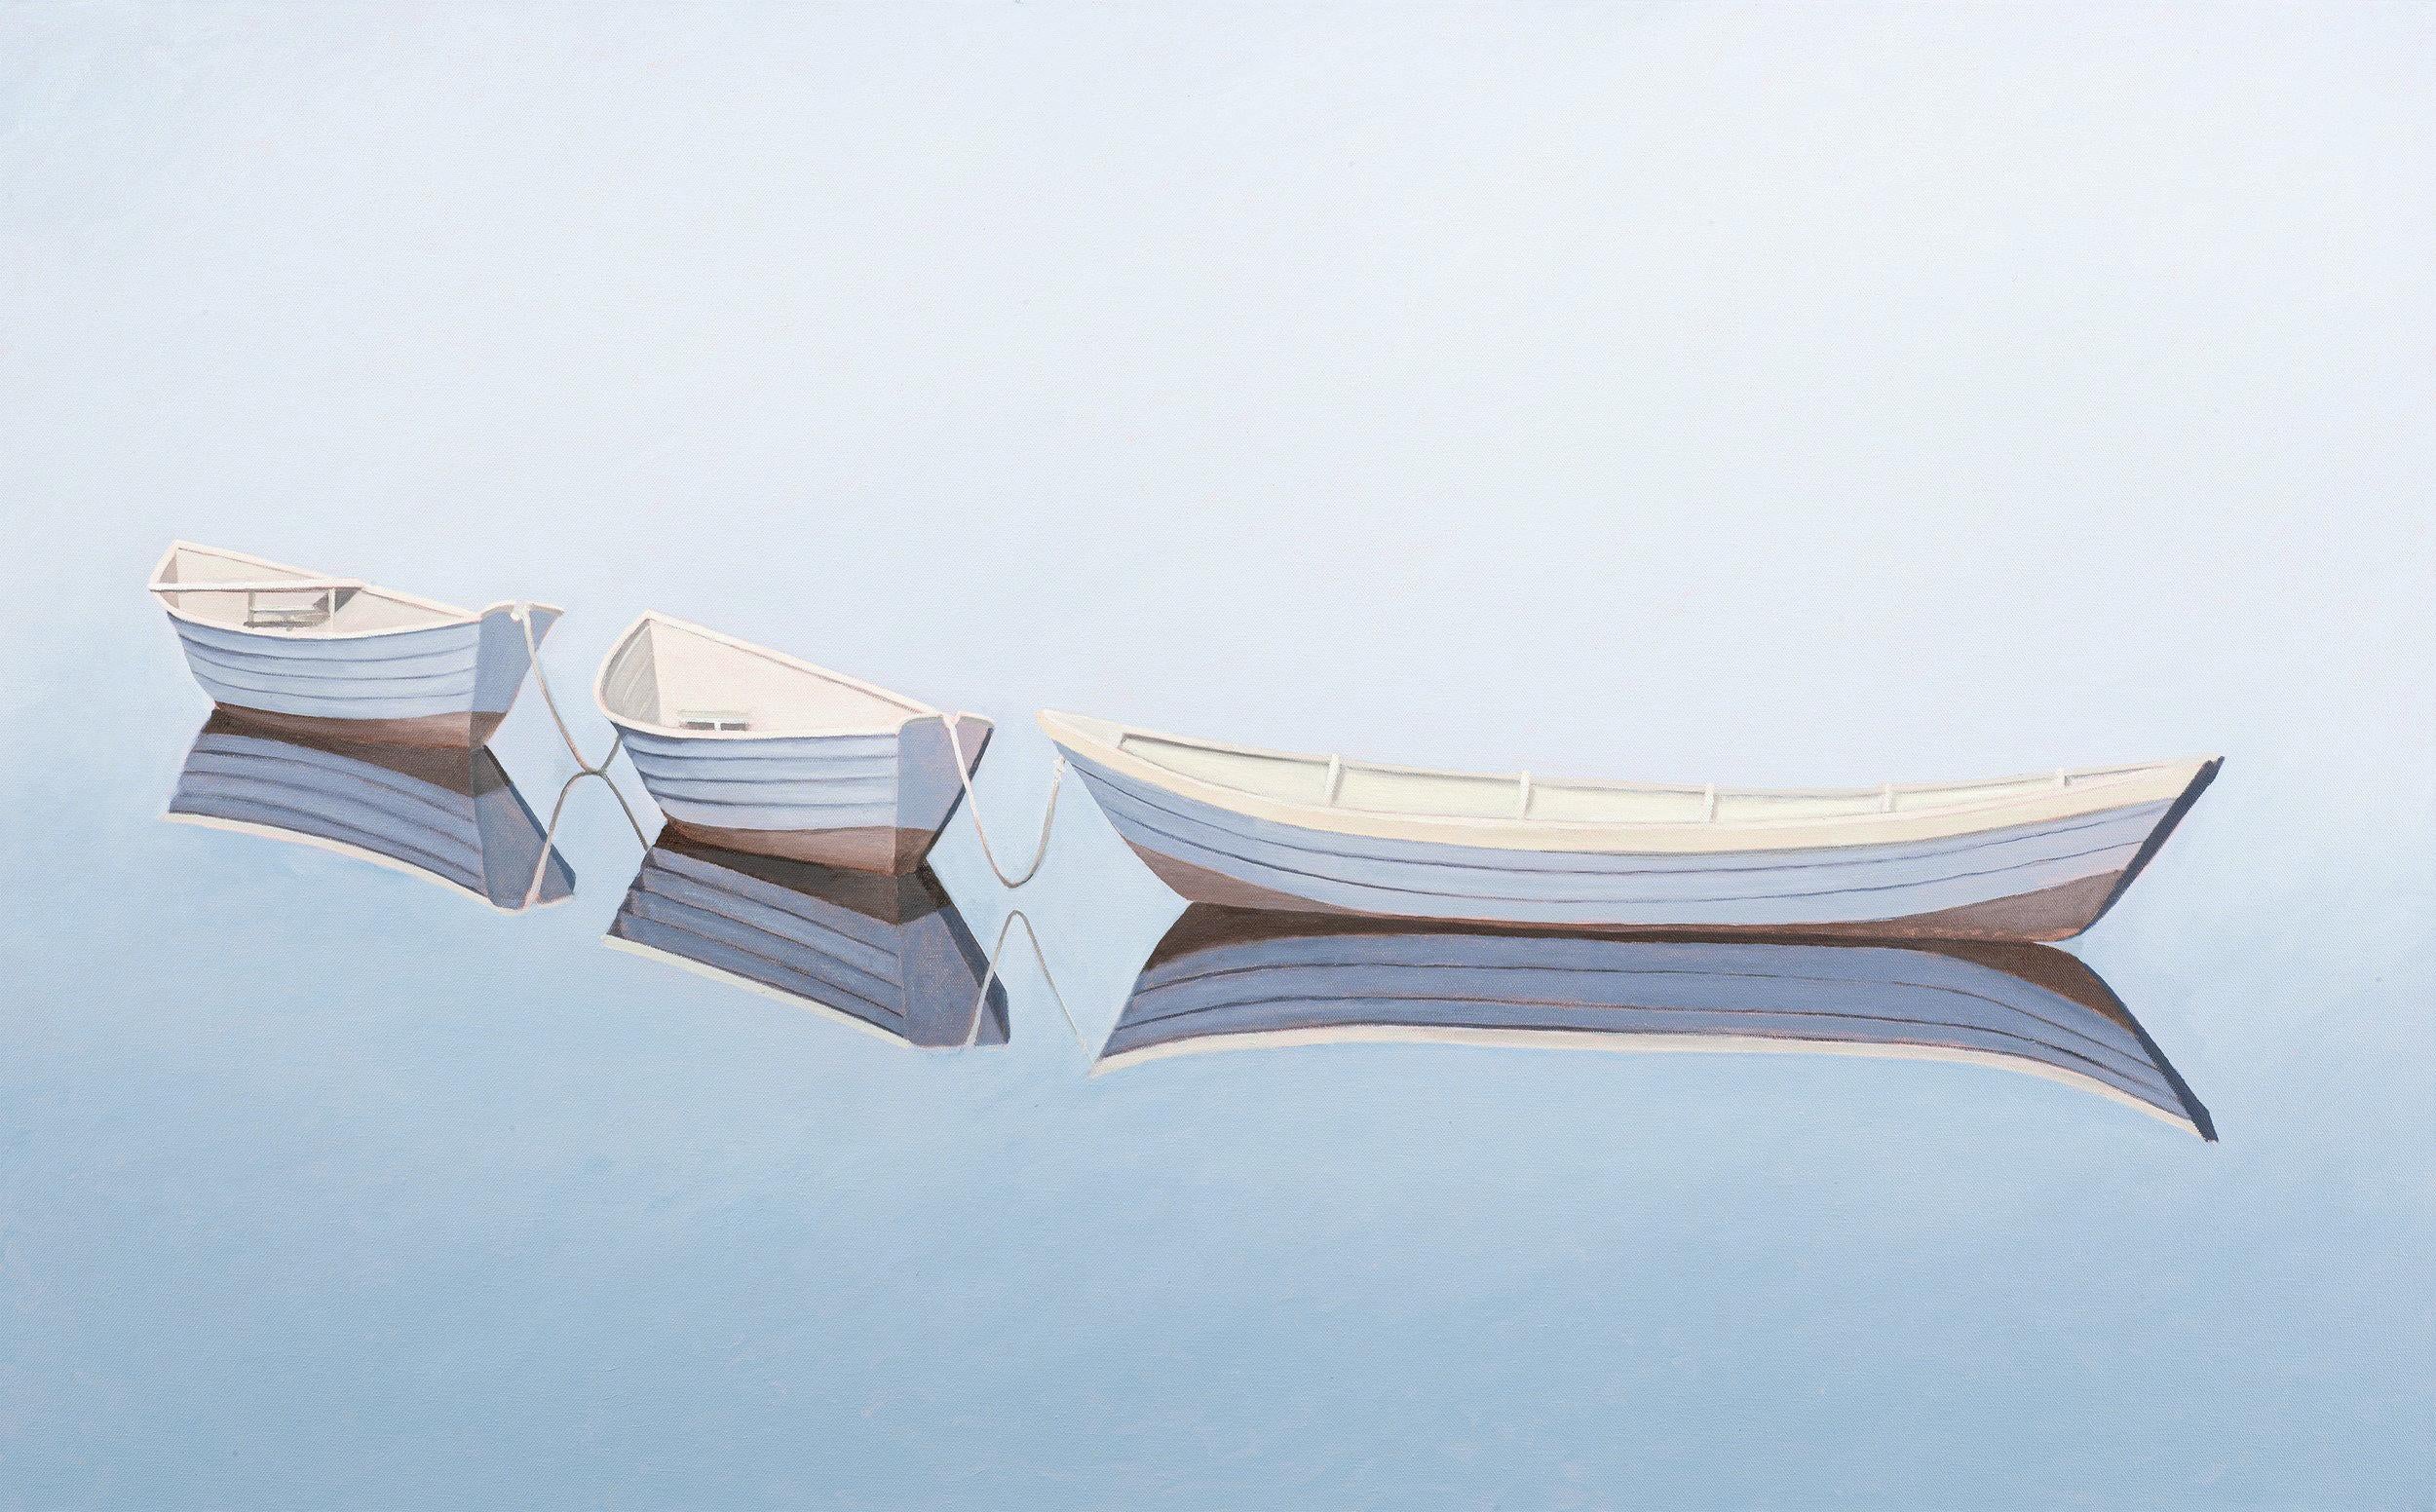 "Three Dories" ist ein 30x48 Ölgemälde auf Leinwand des Künstlers Matthew Jay Russell, das drei einsame weiße Ruderboote in den stillen, blauen Gewässern zeigt. Die subtile Beleuchtung verschmilzt den Horizont mit den Tiefen des Wassers und schafft